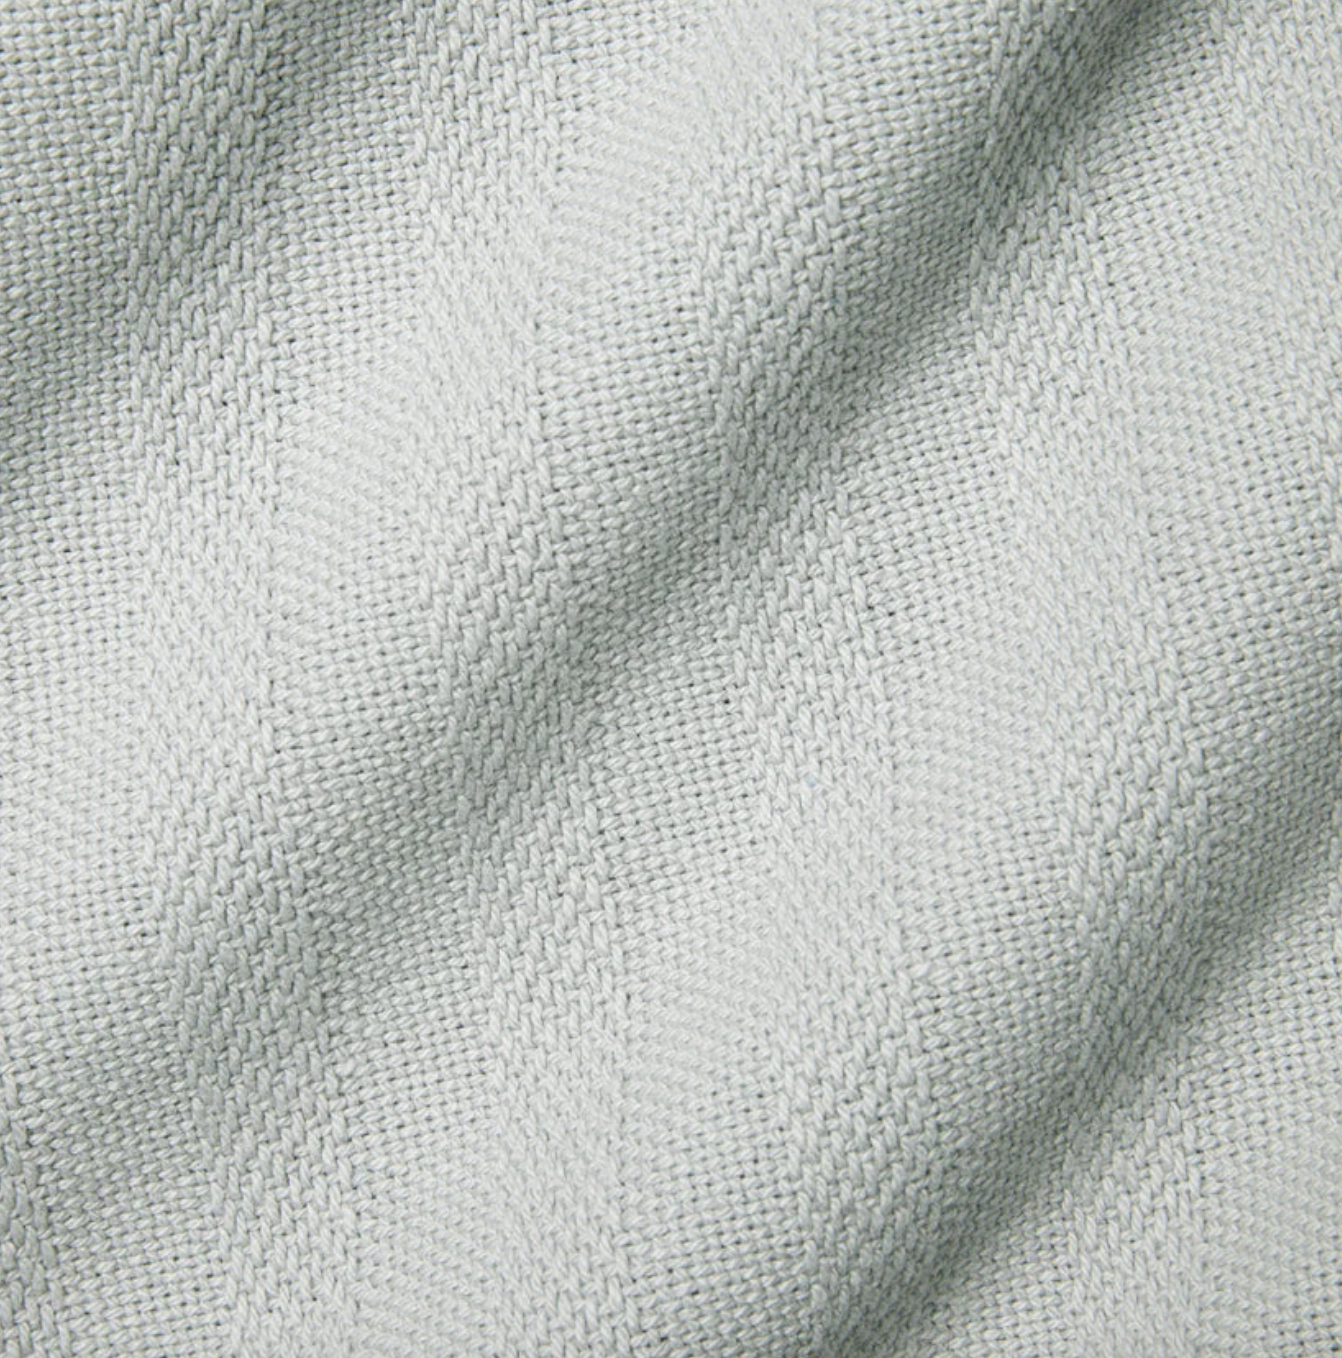 Tavira cotton blankets by Sferra